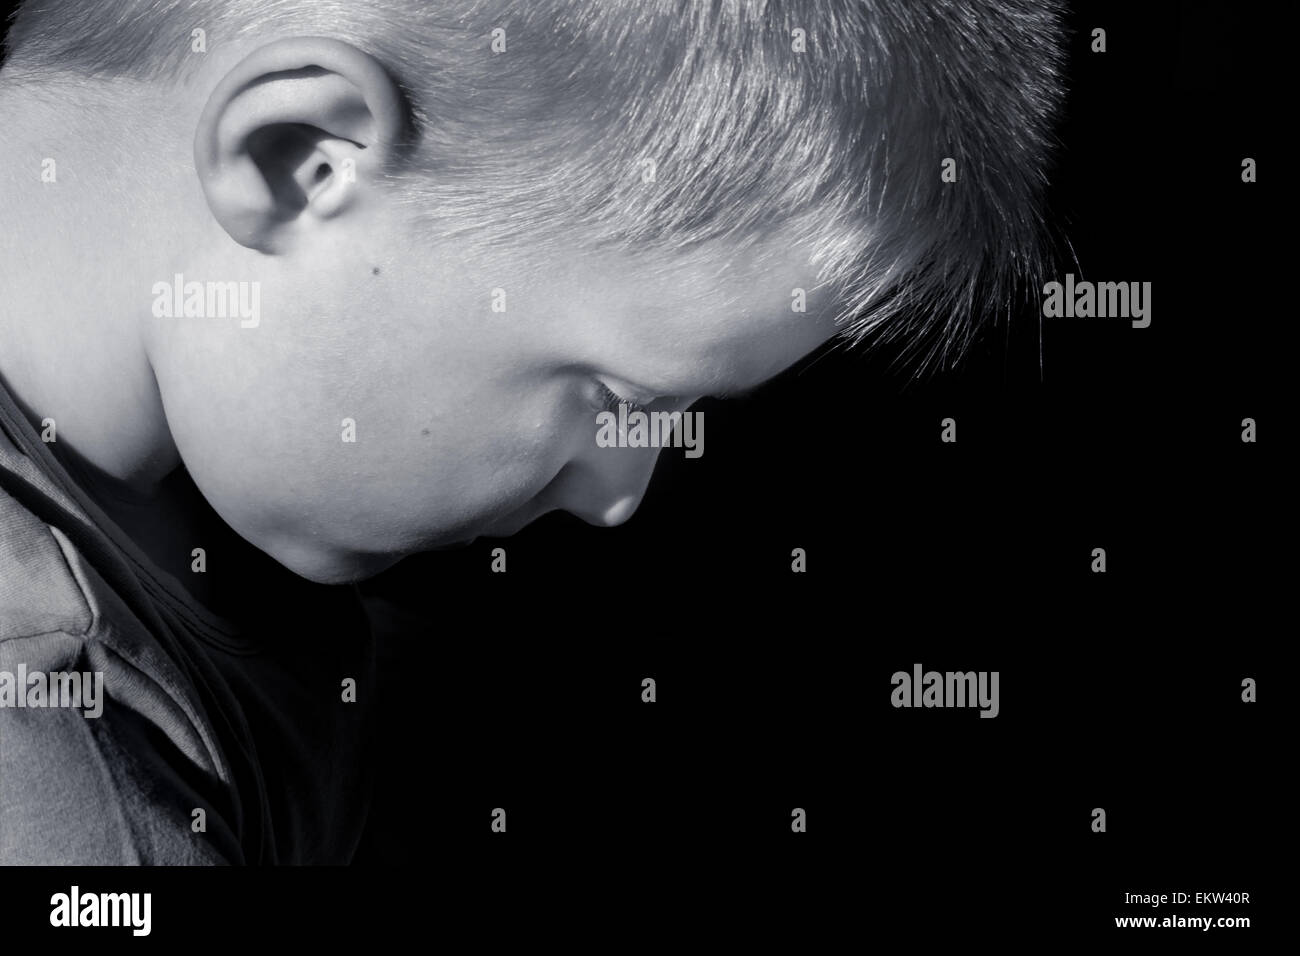 Verärgert missbraucht erschrocken kleines Kind (junge), nahe horizontalen dunklen Porträt mit Textfreiraum Stockfoto